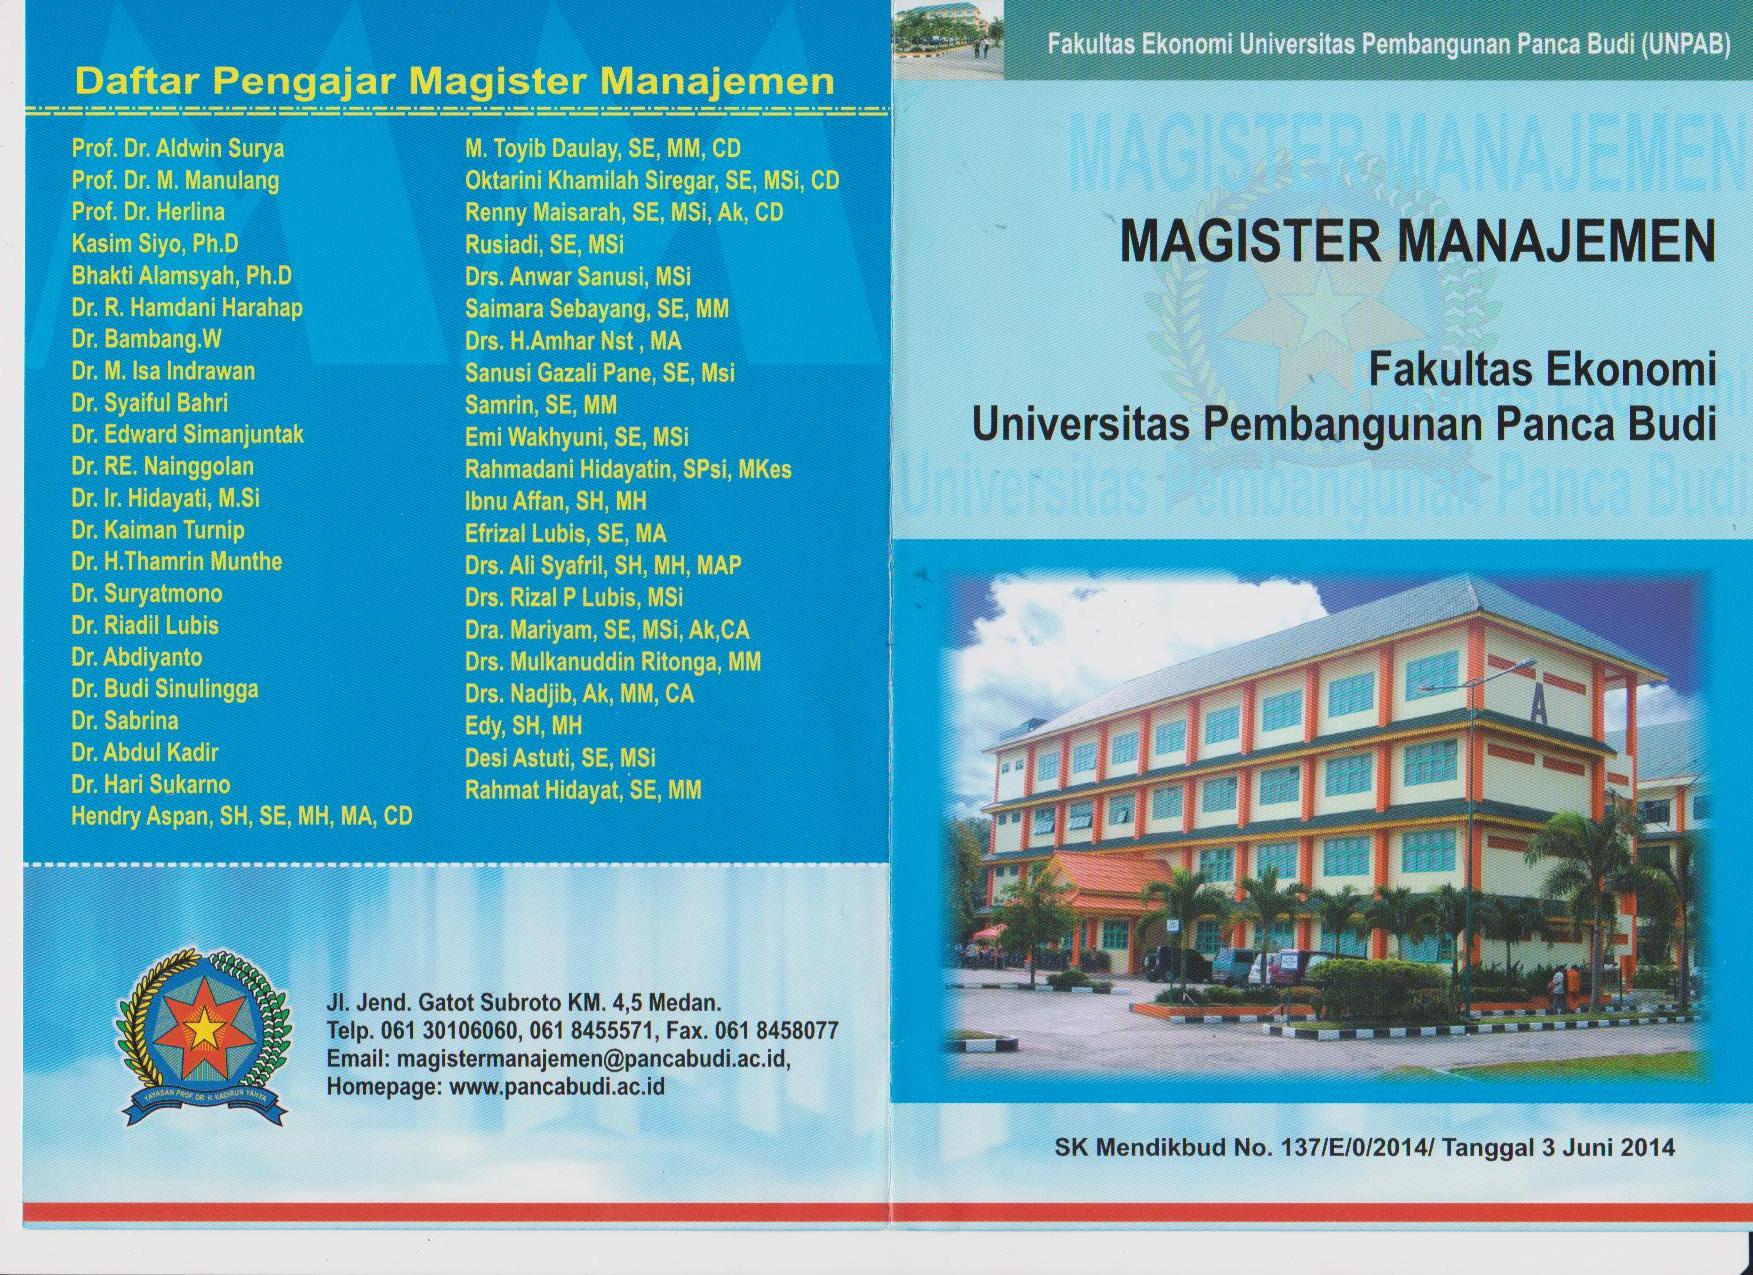 program-magister-manajemen-universitas-pembangunan-panca-budi_78.jpg